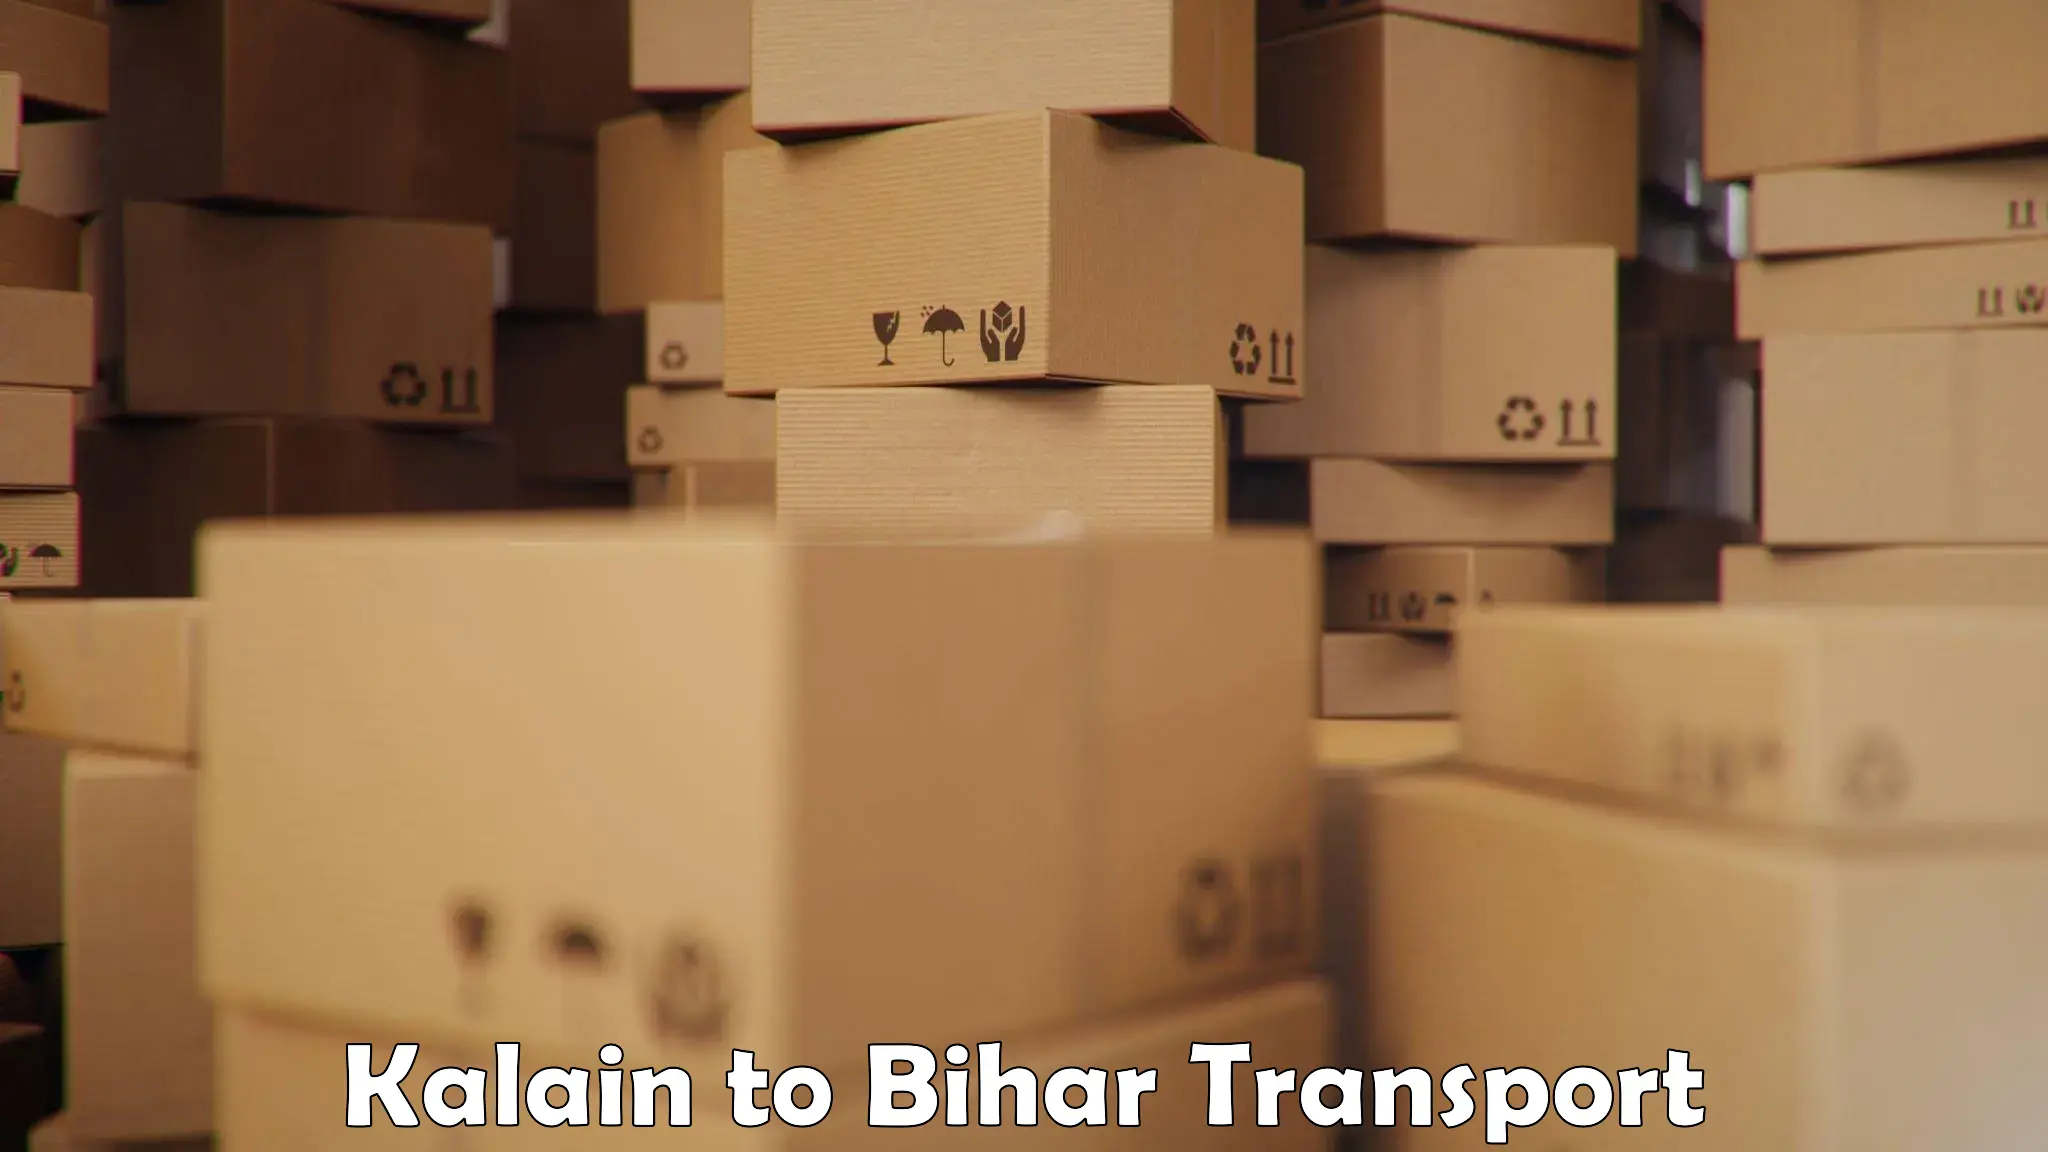 Pick up transport service Kalain to Darbhanga